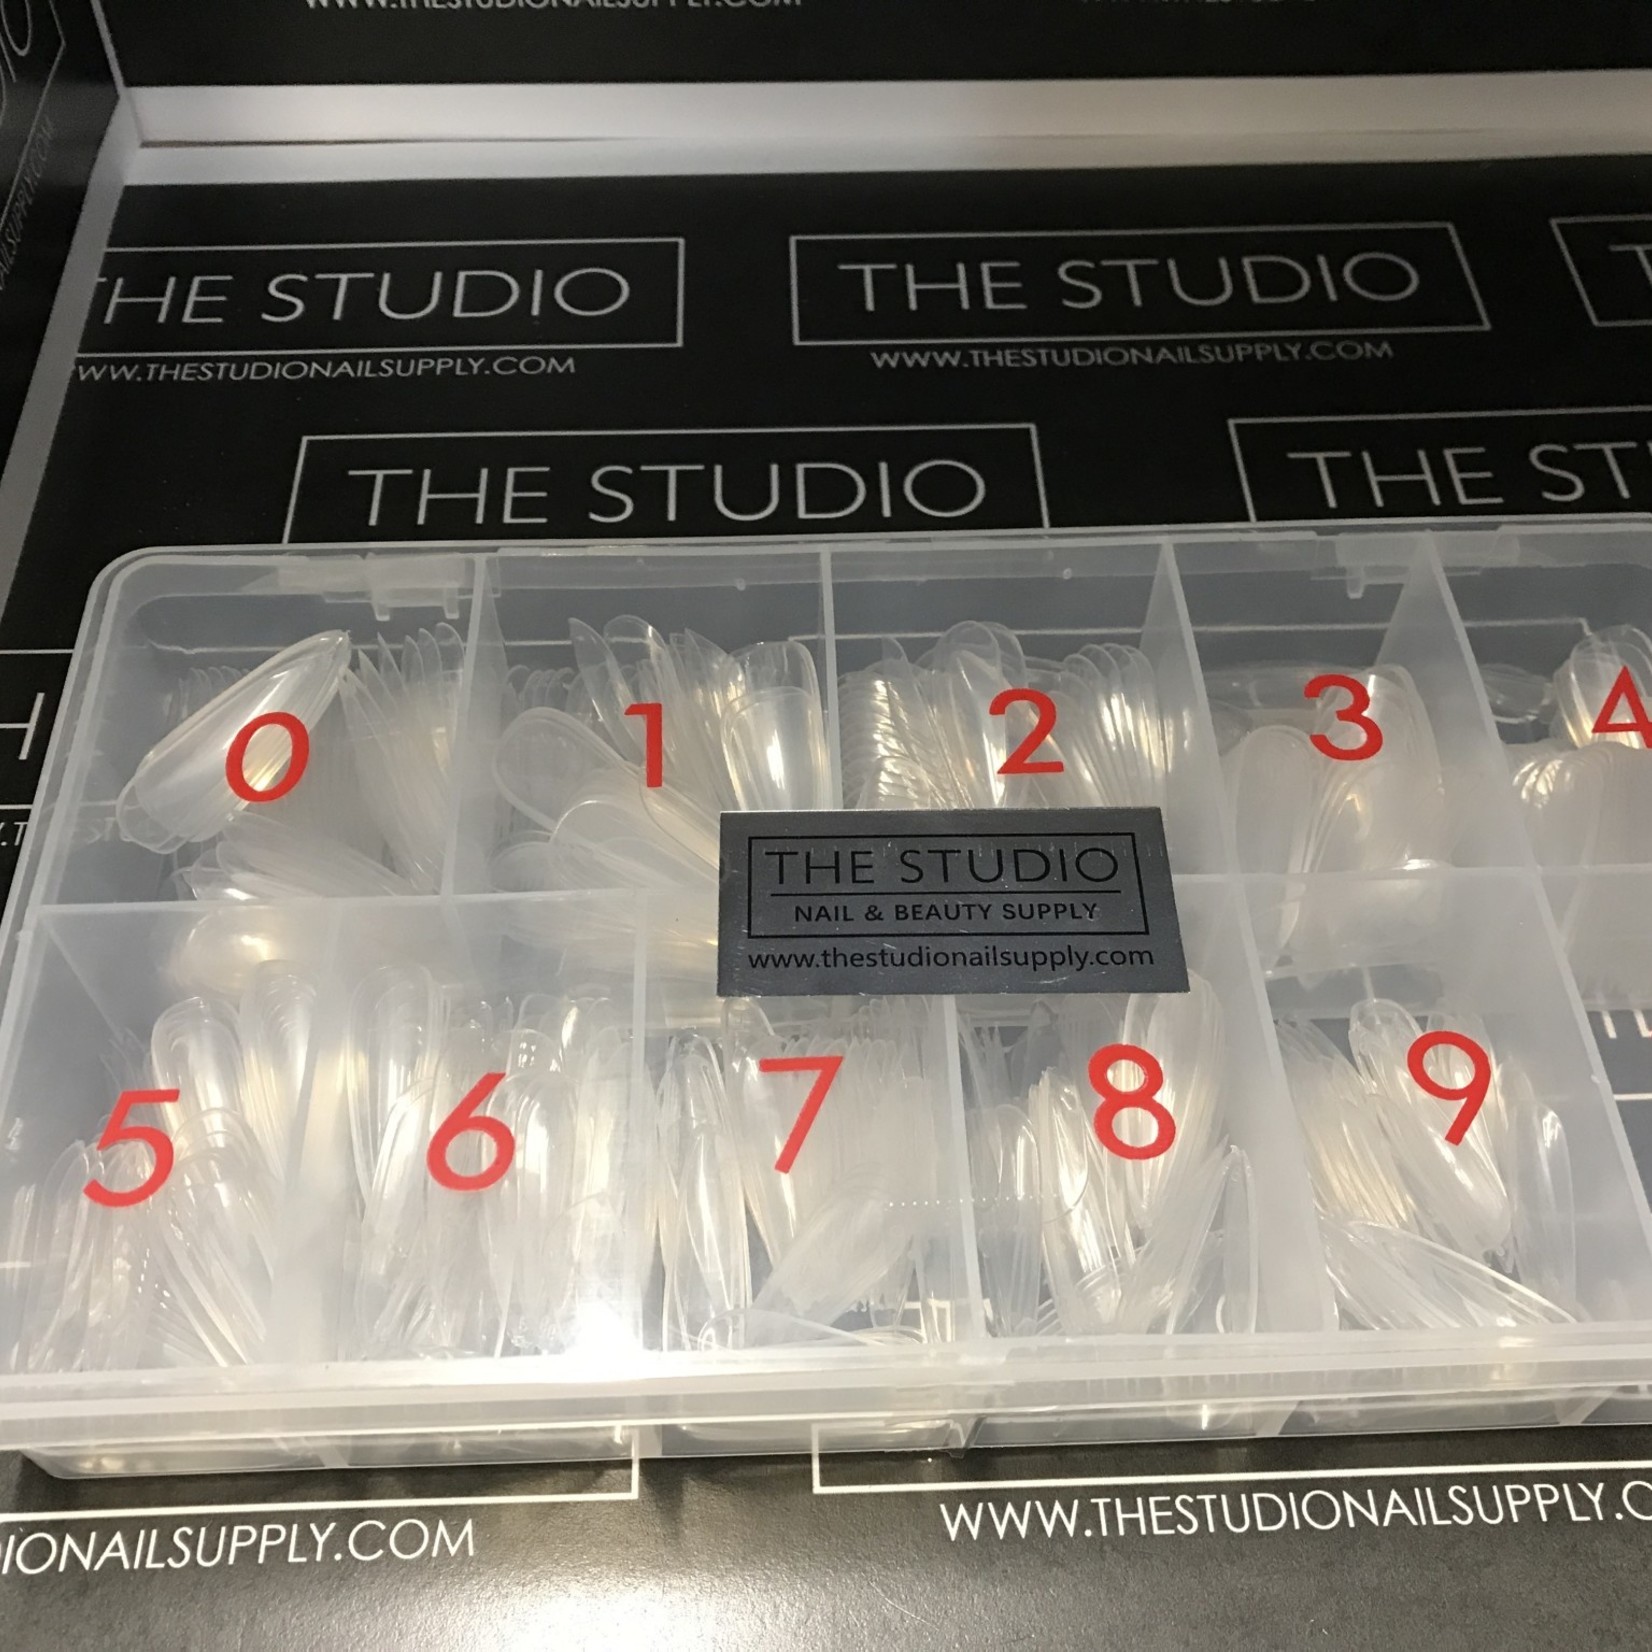 The Studio The Studio - Tip Box - Full Cover - Stiletto Clear -